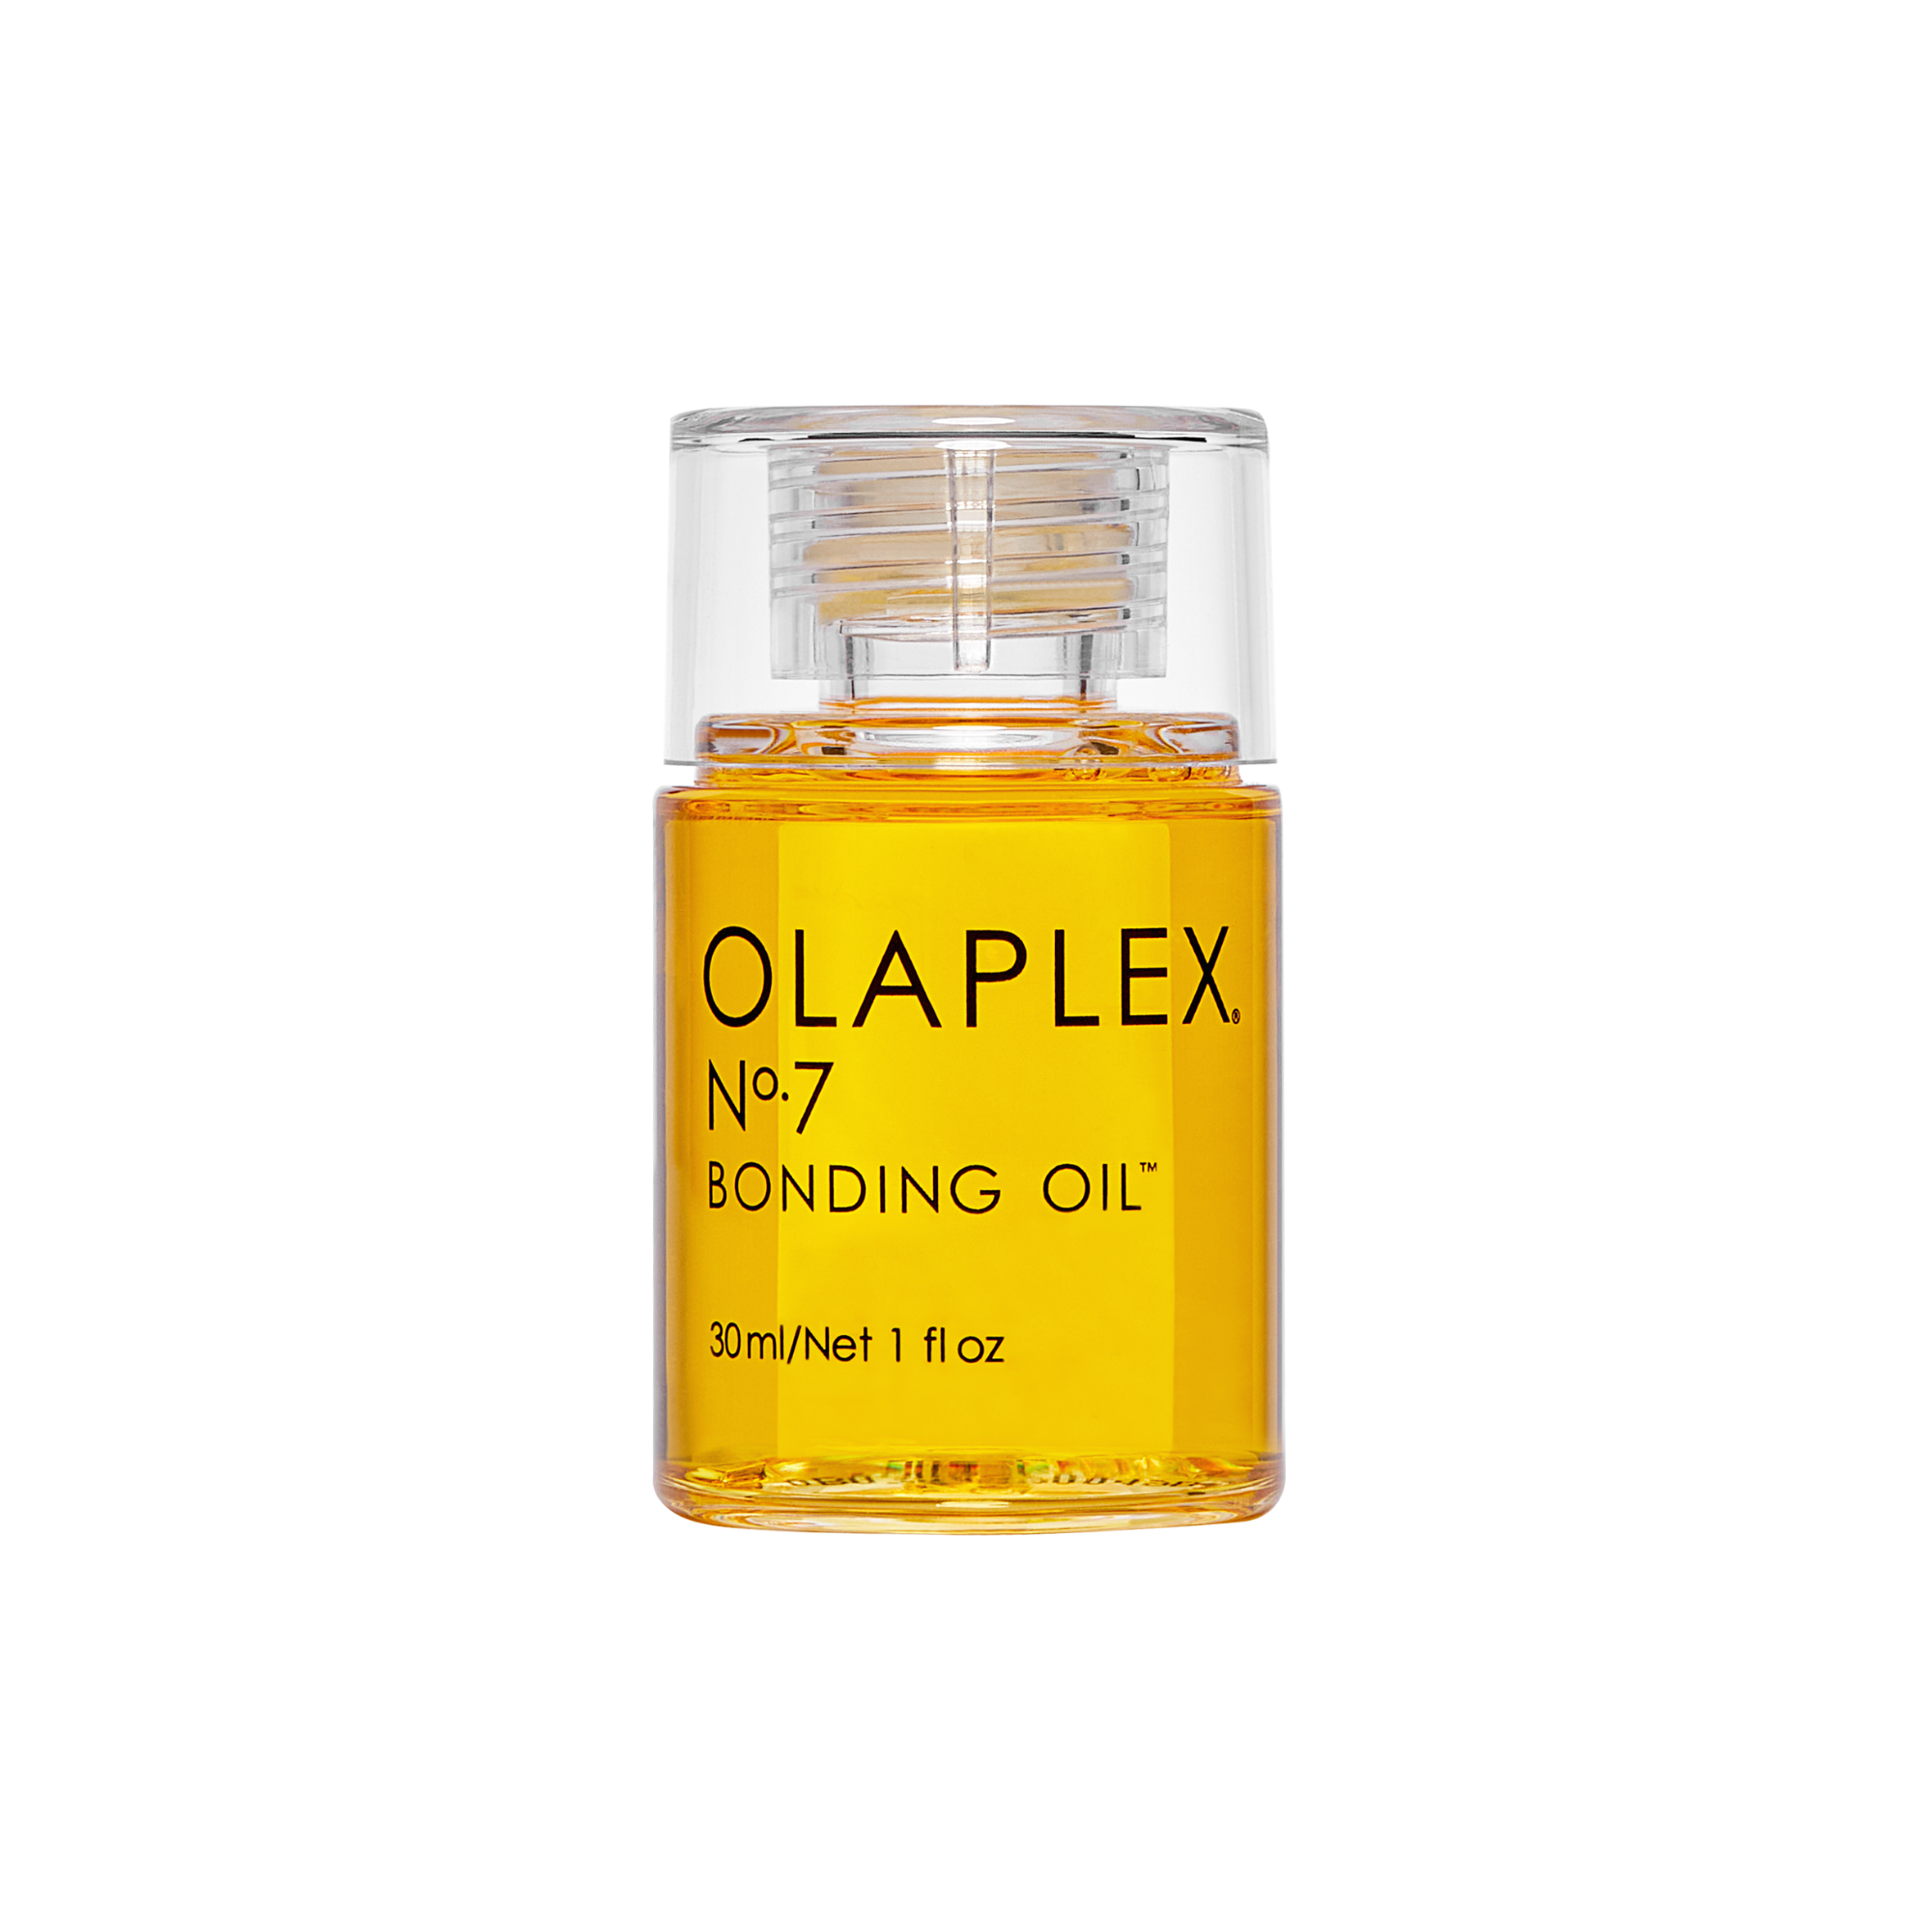 Original OLAPLEX® N°7 Bonding Oil